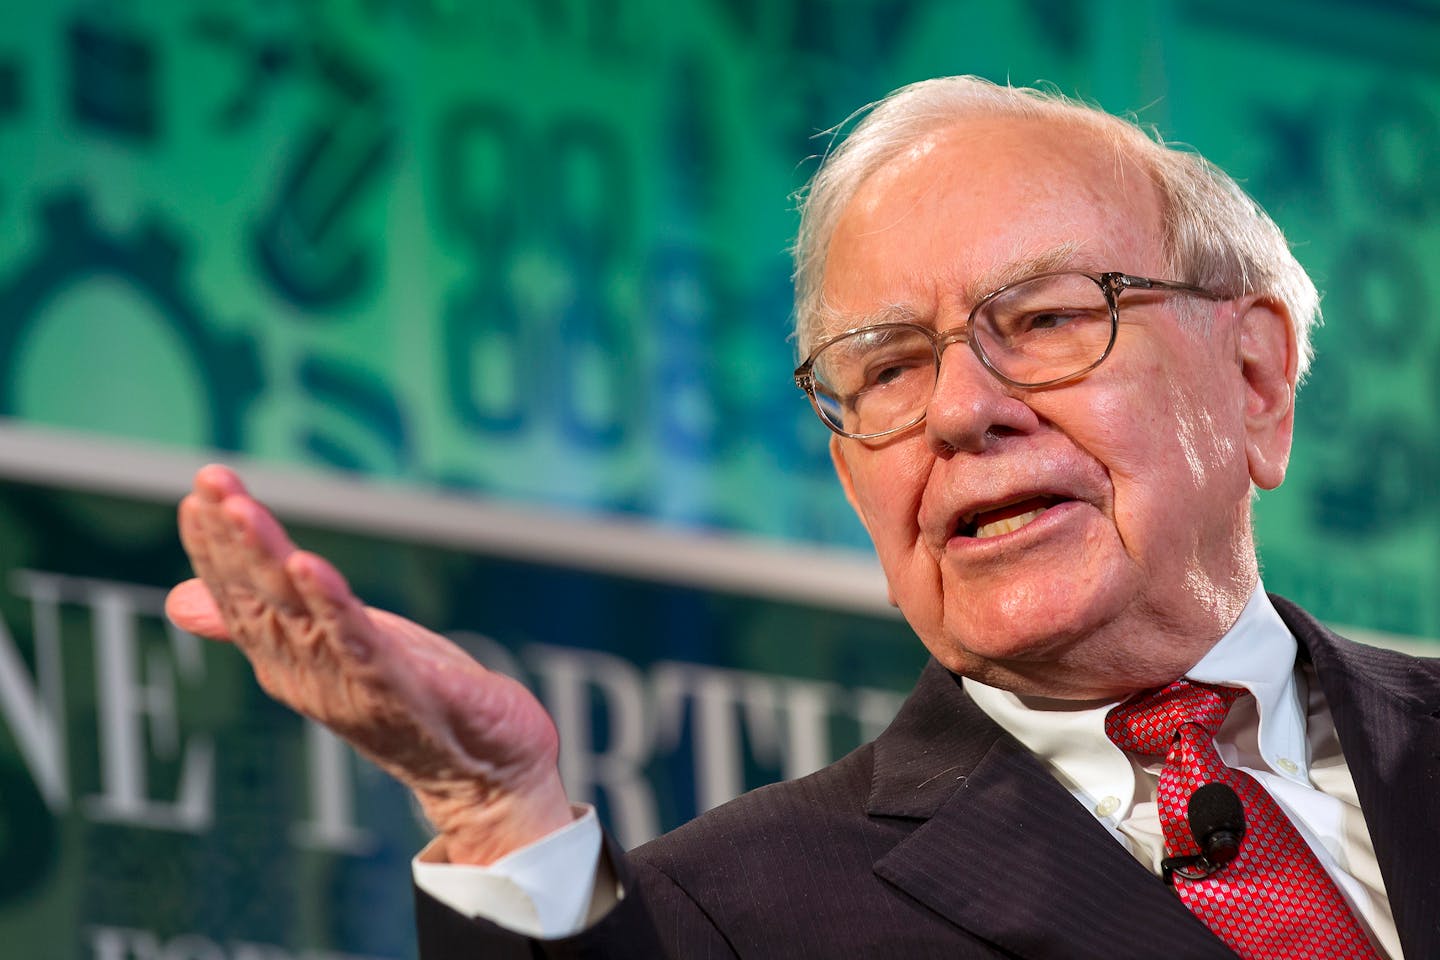 Smart investor Warren Buffett